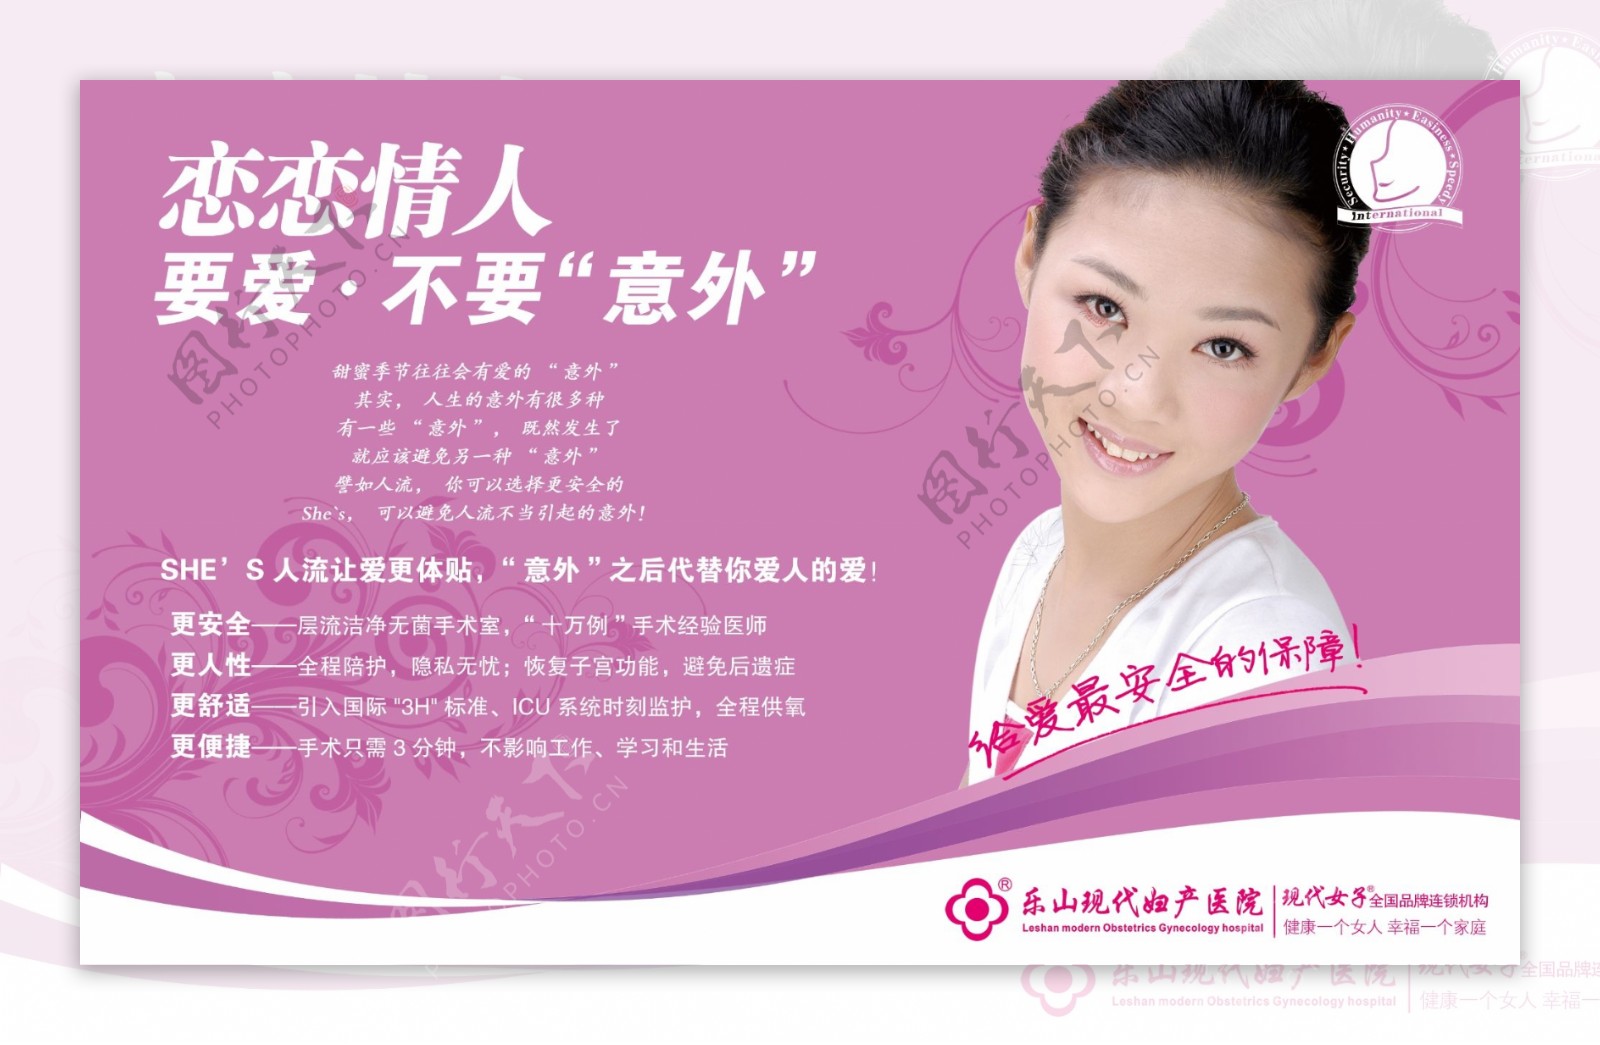 现代妇产医院粉色海报模板PSD素材